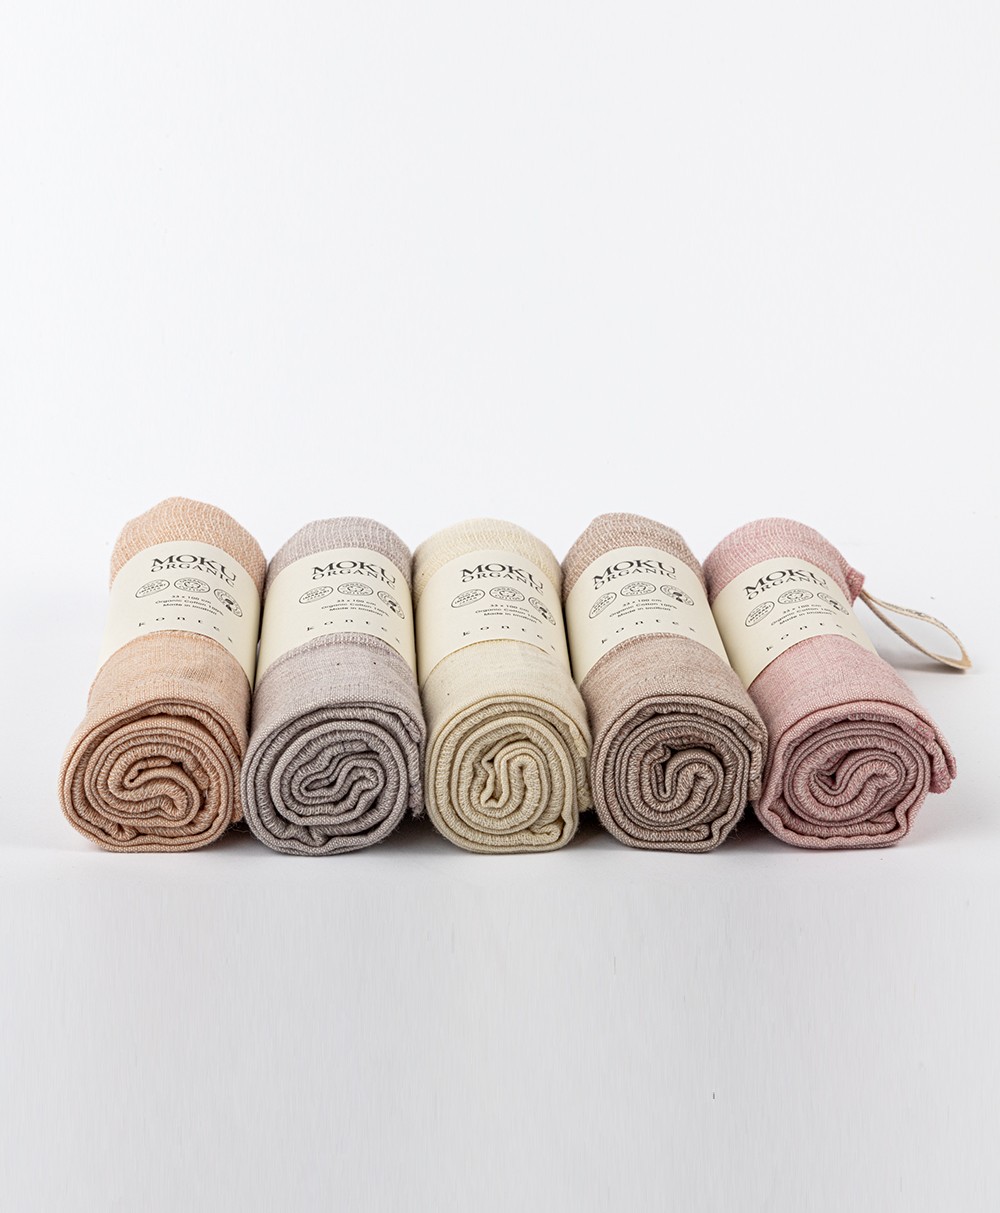 Hier abgebildet das Moku Organic Towel alle Farben von Kenkawai - RAUM concept store